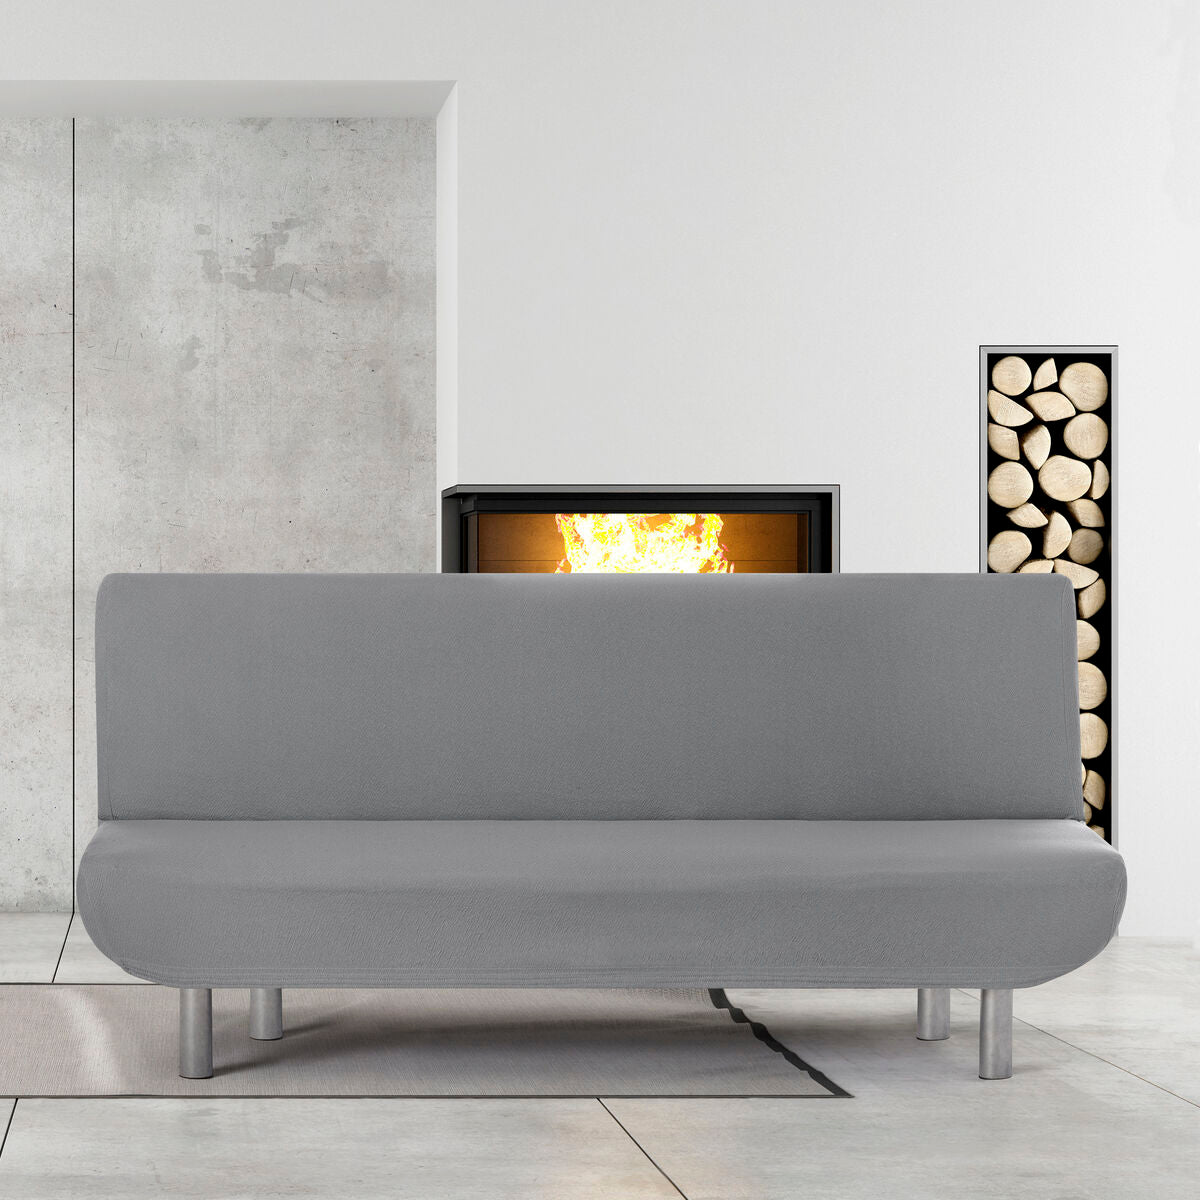 Cover di divano grigio Eysa Bronx 140 x 100 x 200 cm